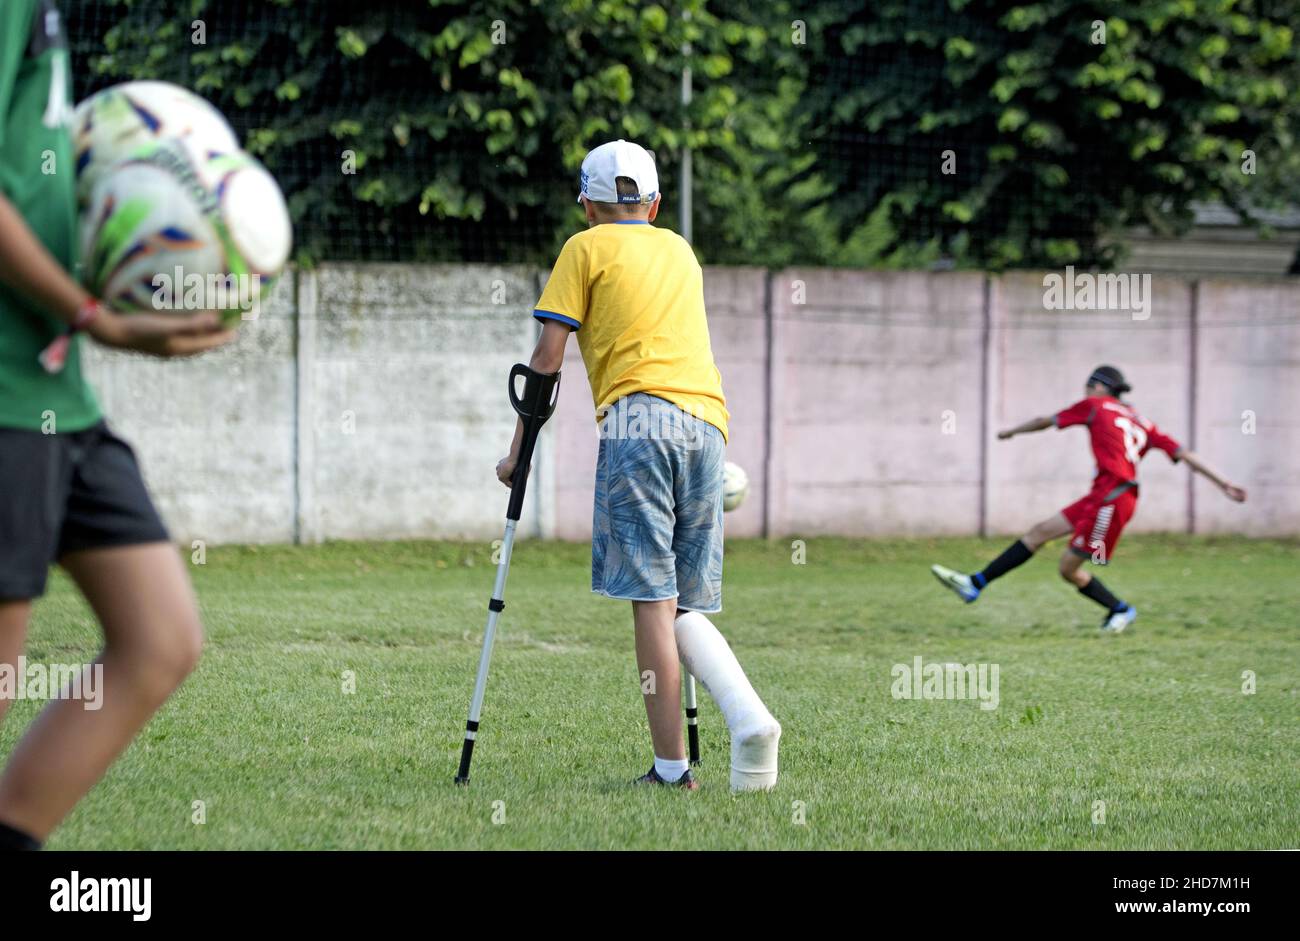 Niño con pierna en yeso después de una lesión de fútbol viendo a un compañero jugando Foto de stock